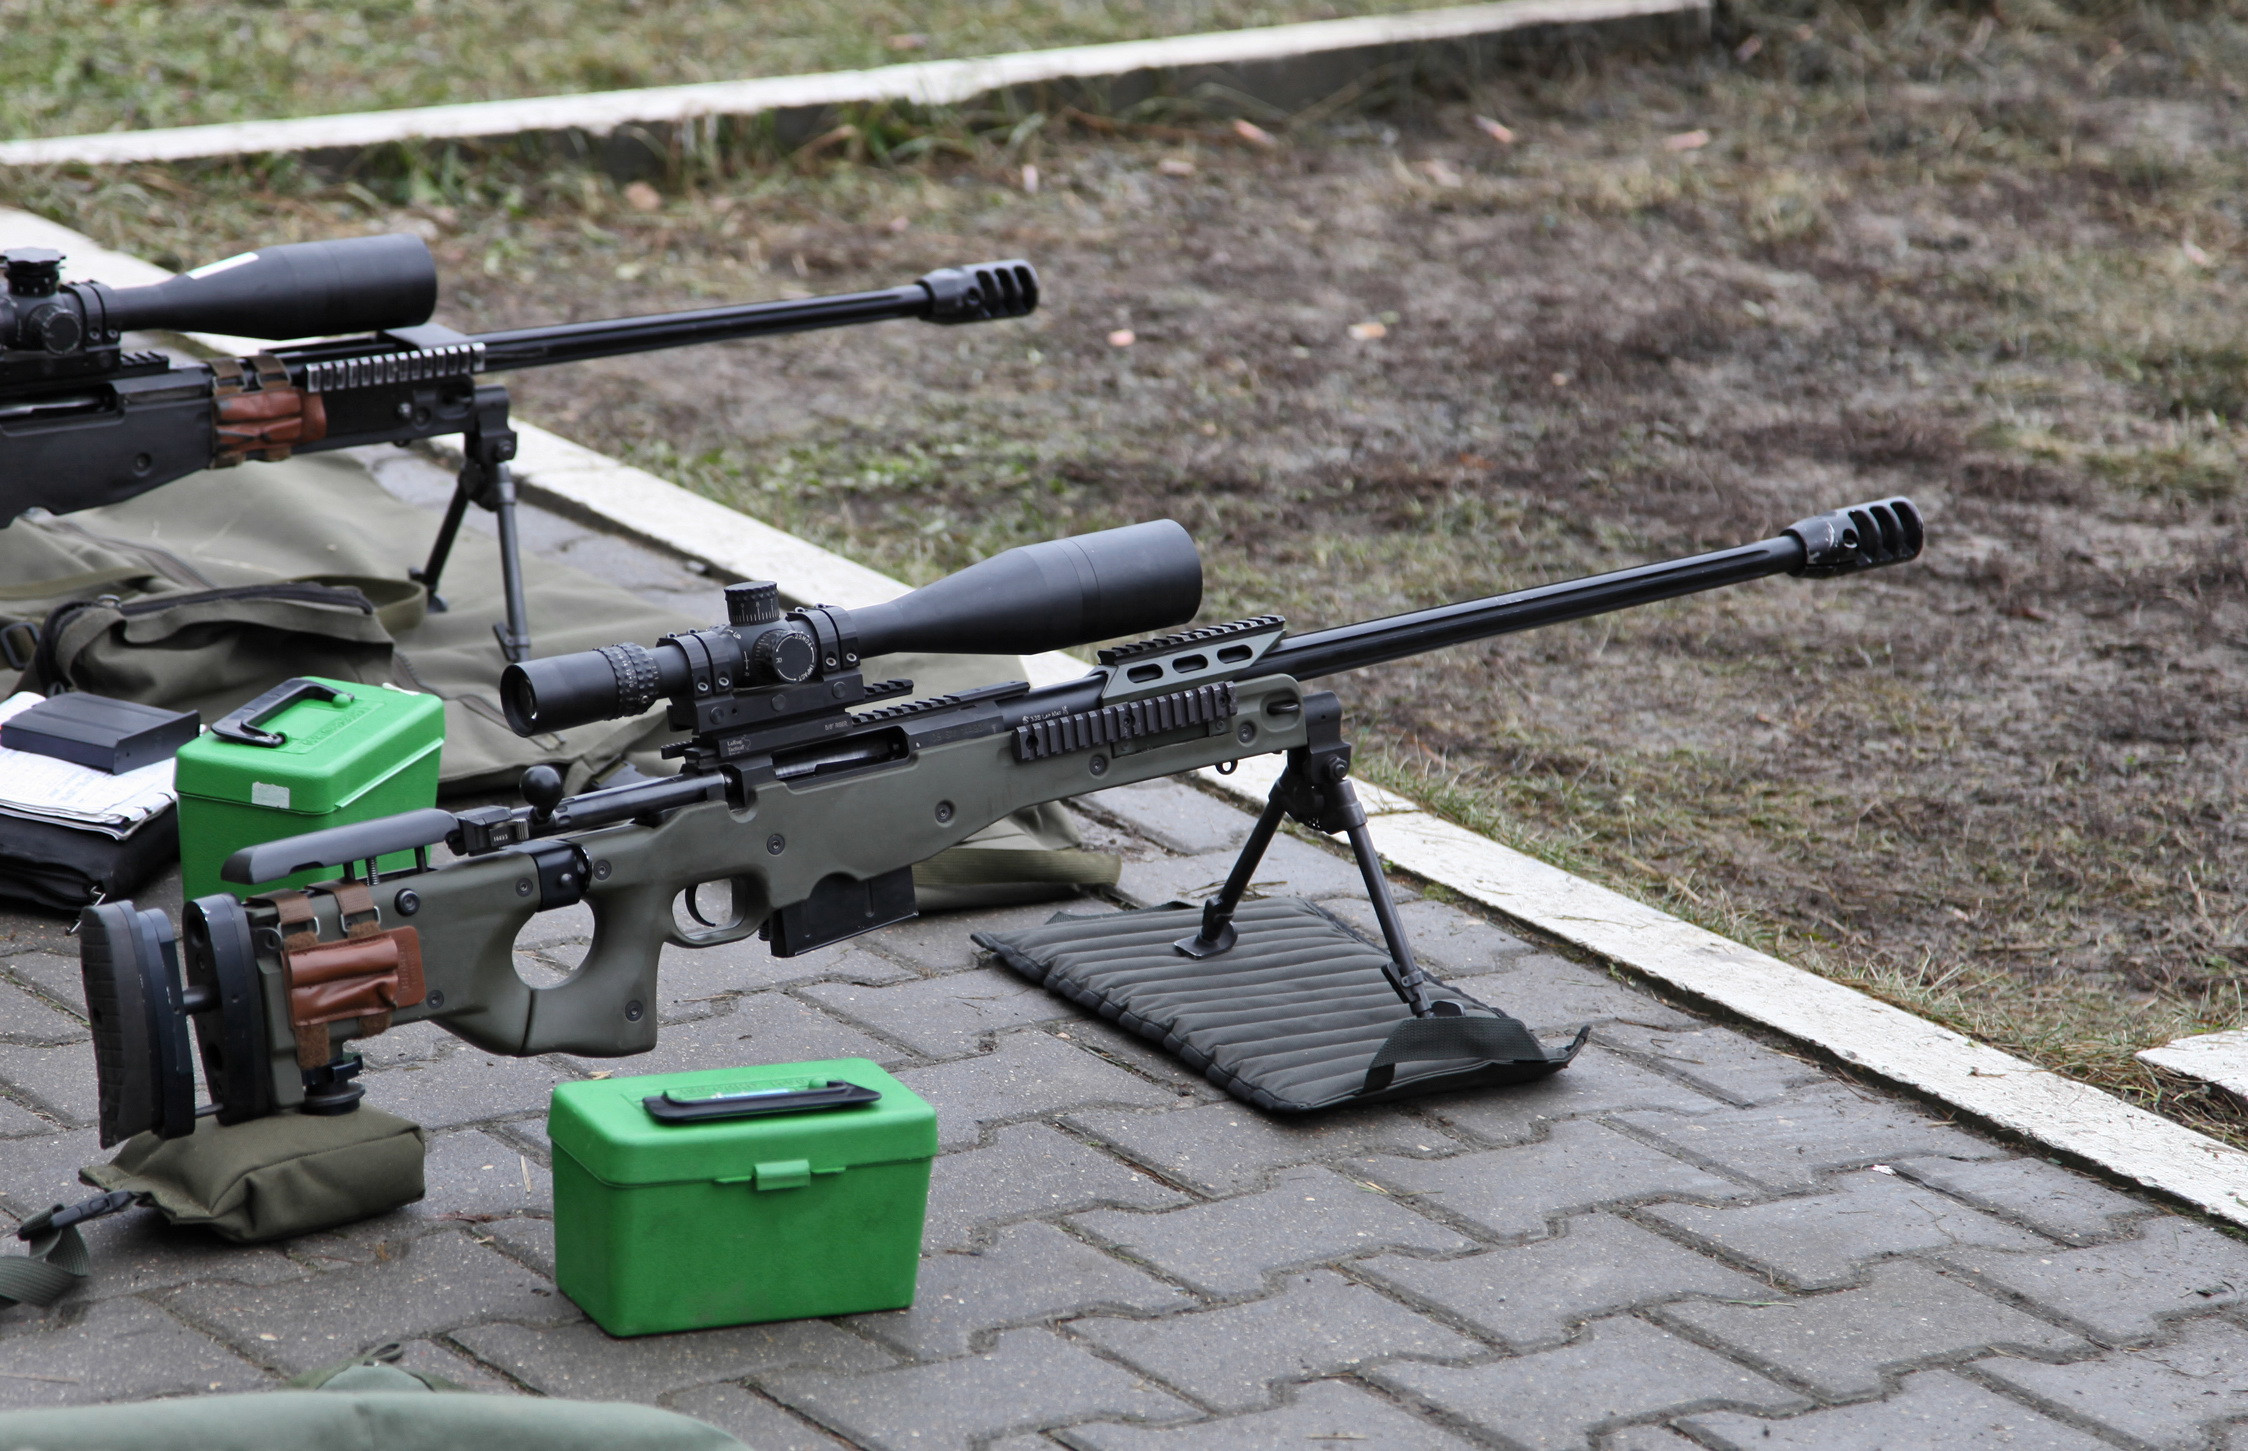 巴雷特M98狙击步枪图片